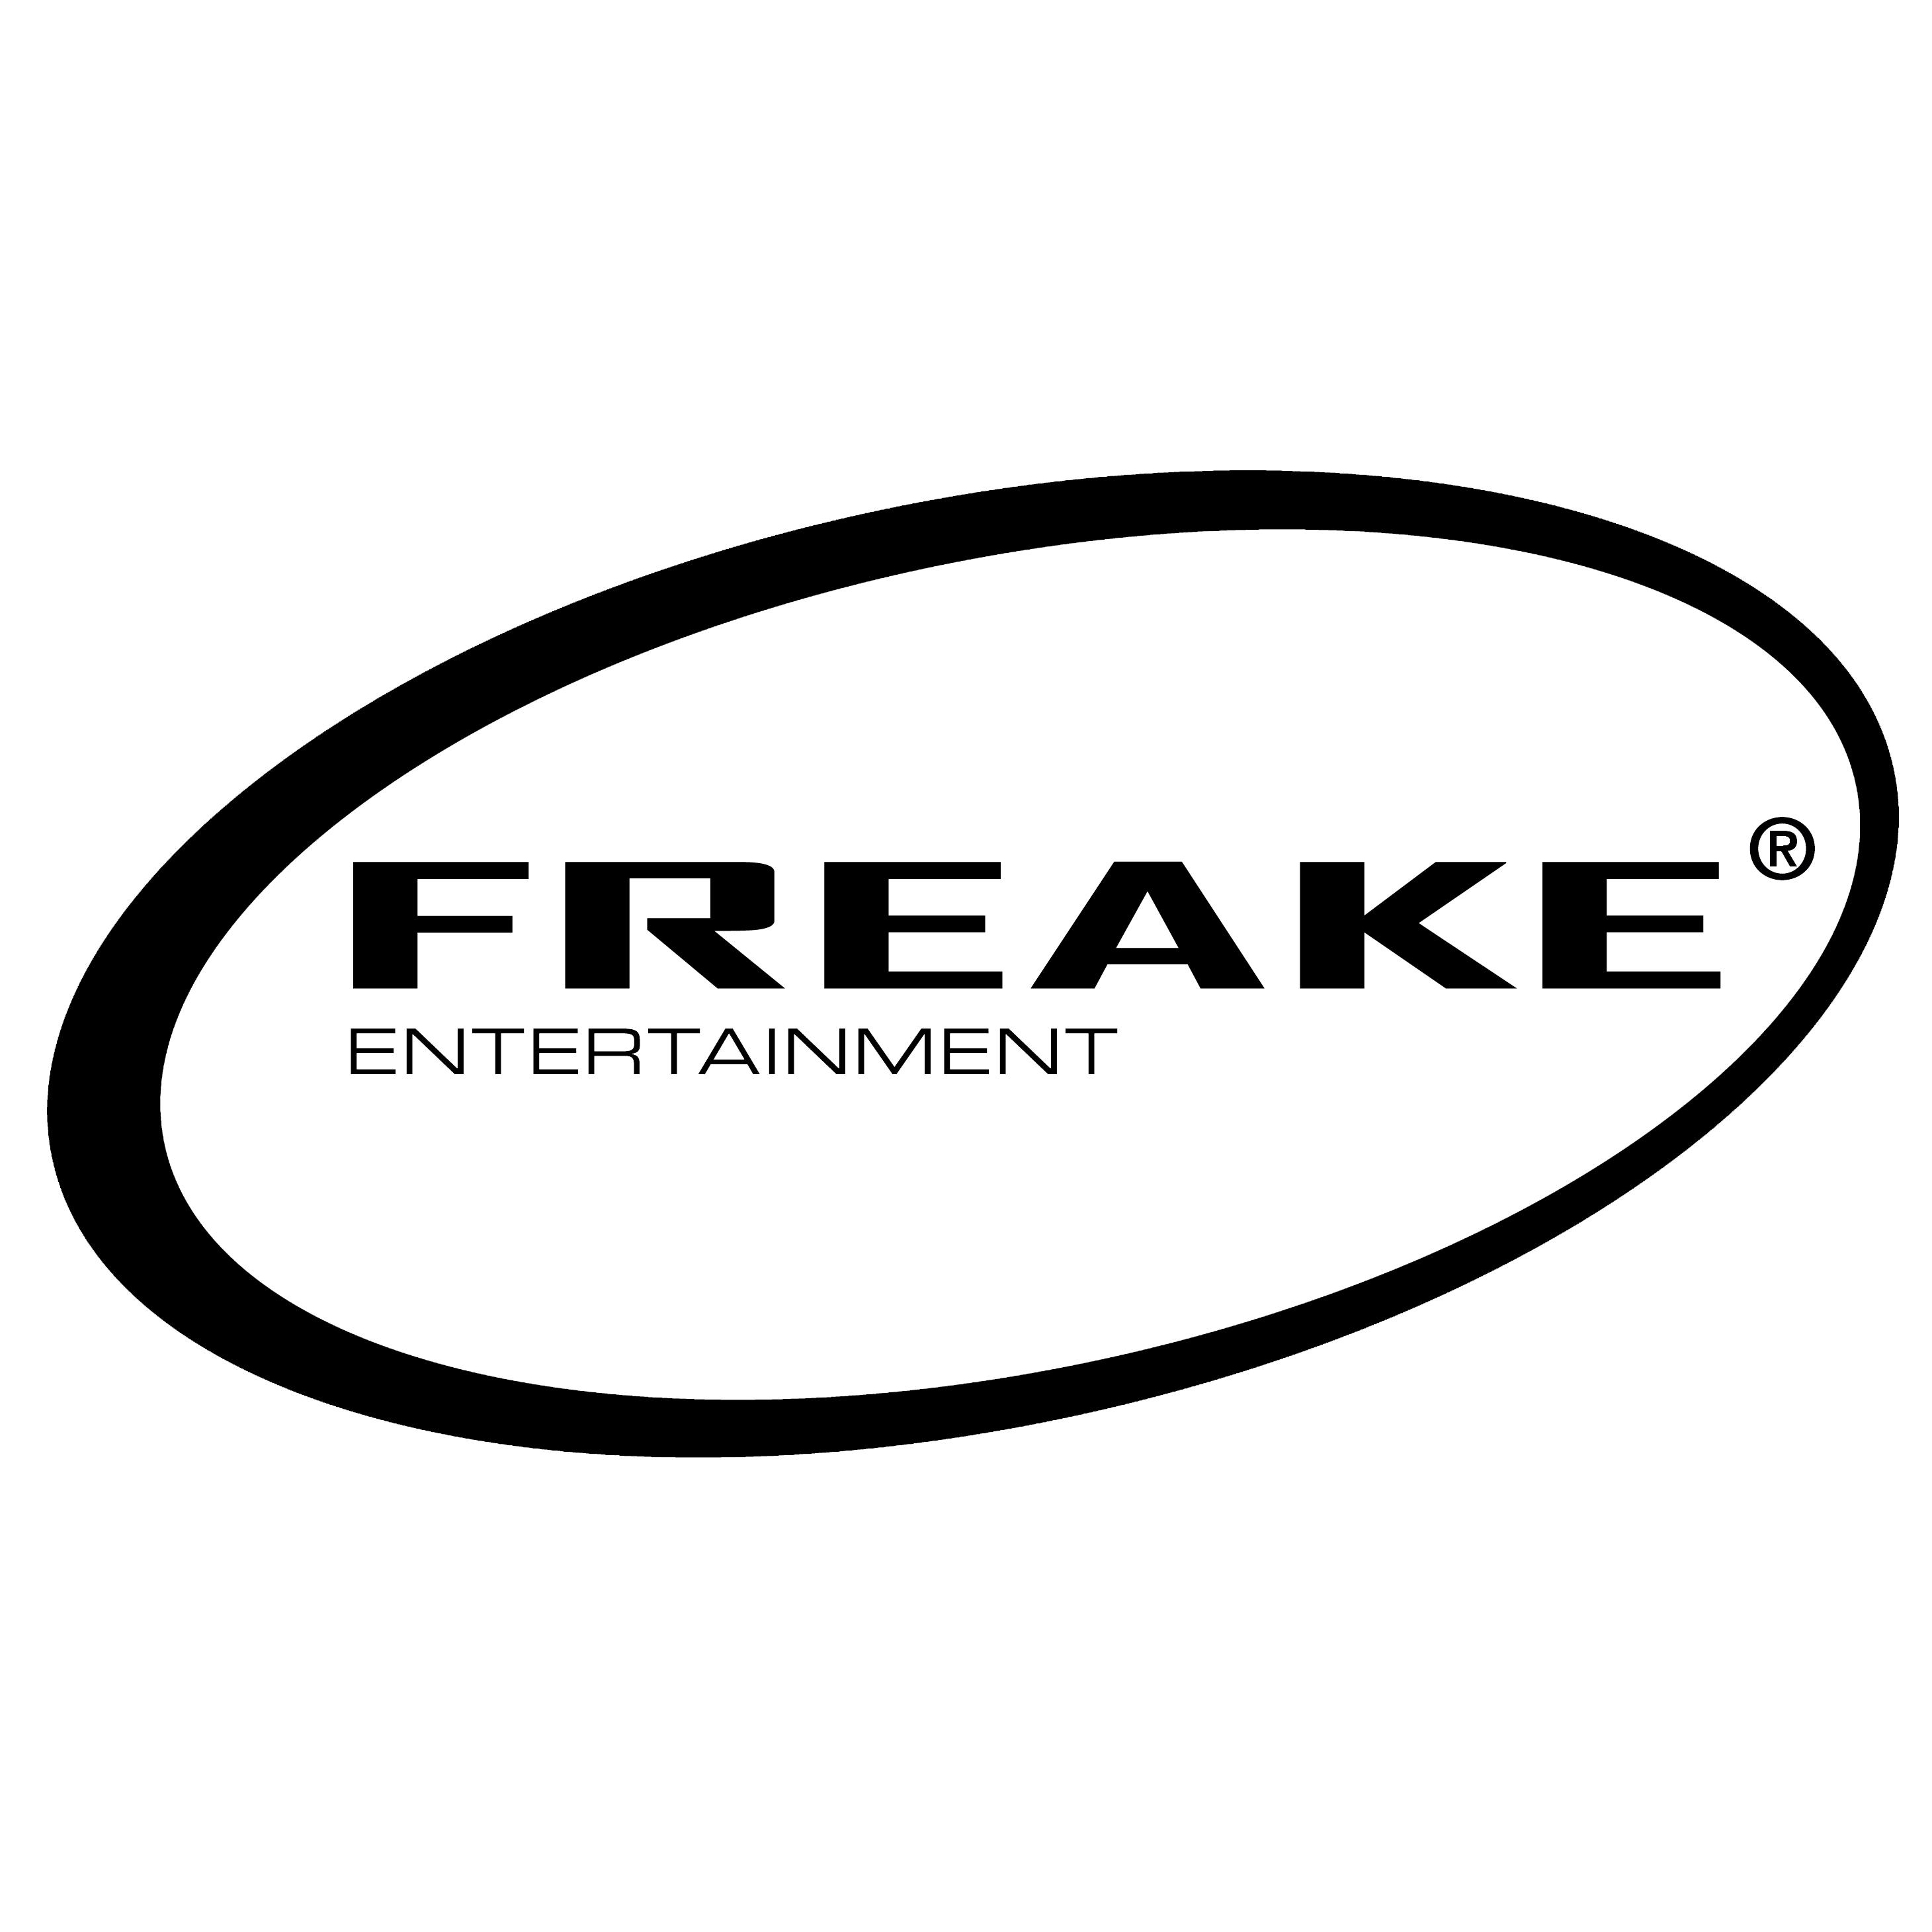 (c) Dj-freake.com